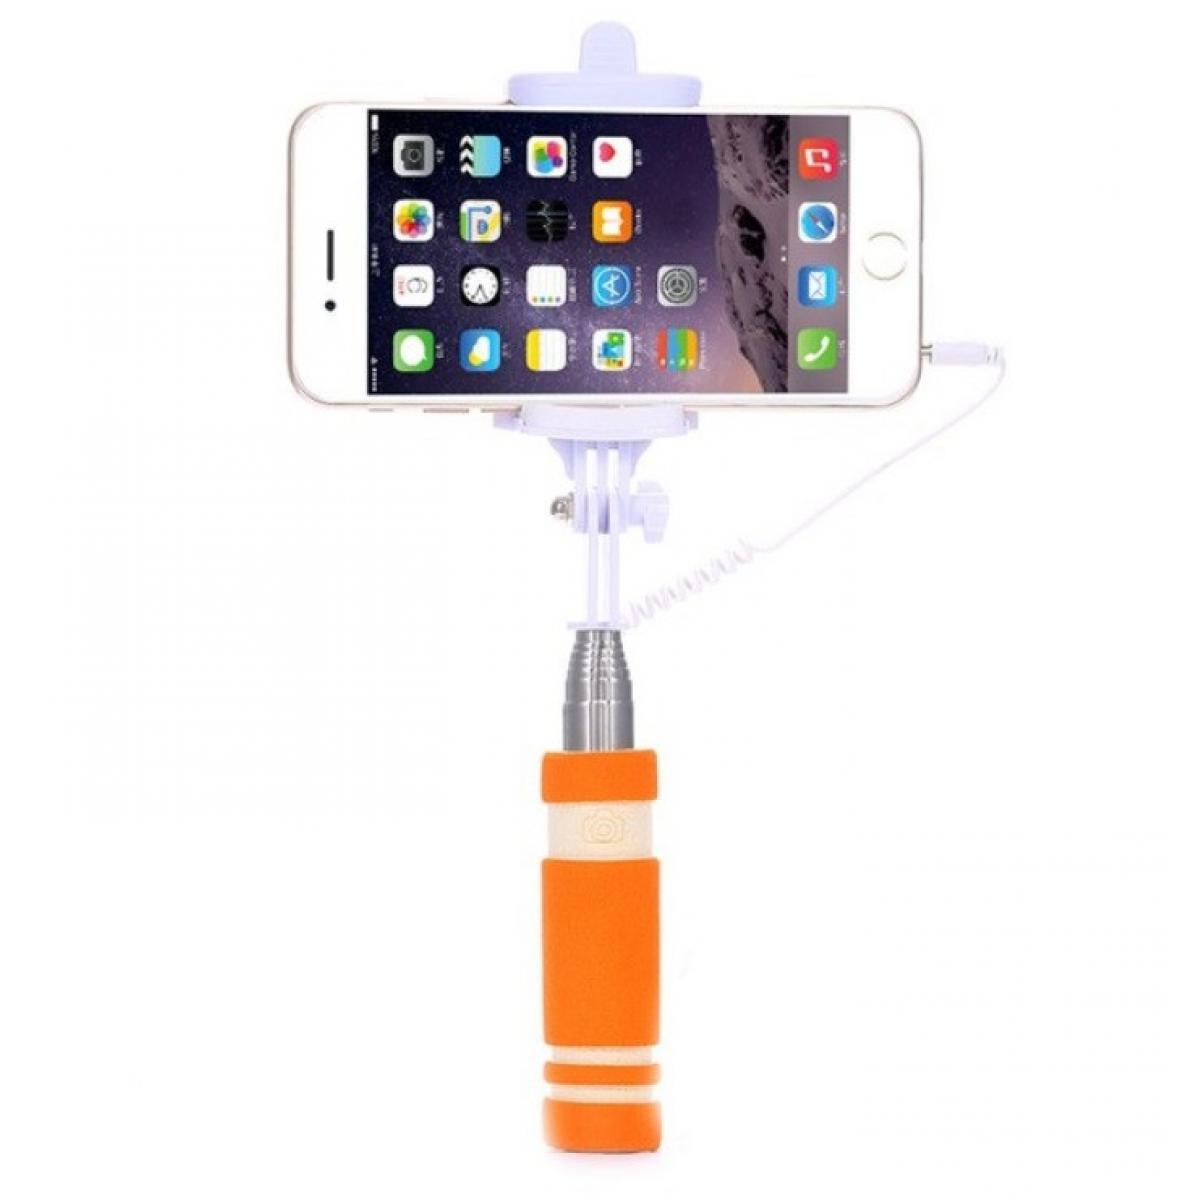 Shot - Mini Perche Selfie pour ASUS ROG Phone II Smartphone avec Cable Jack Selfie Stick Android IOS Reglable Bouton Photo (ORANGE) - Autres accessoires smartphone